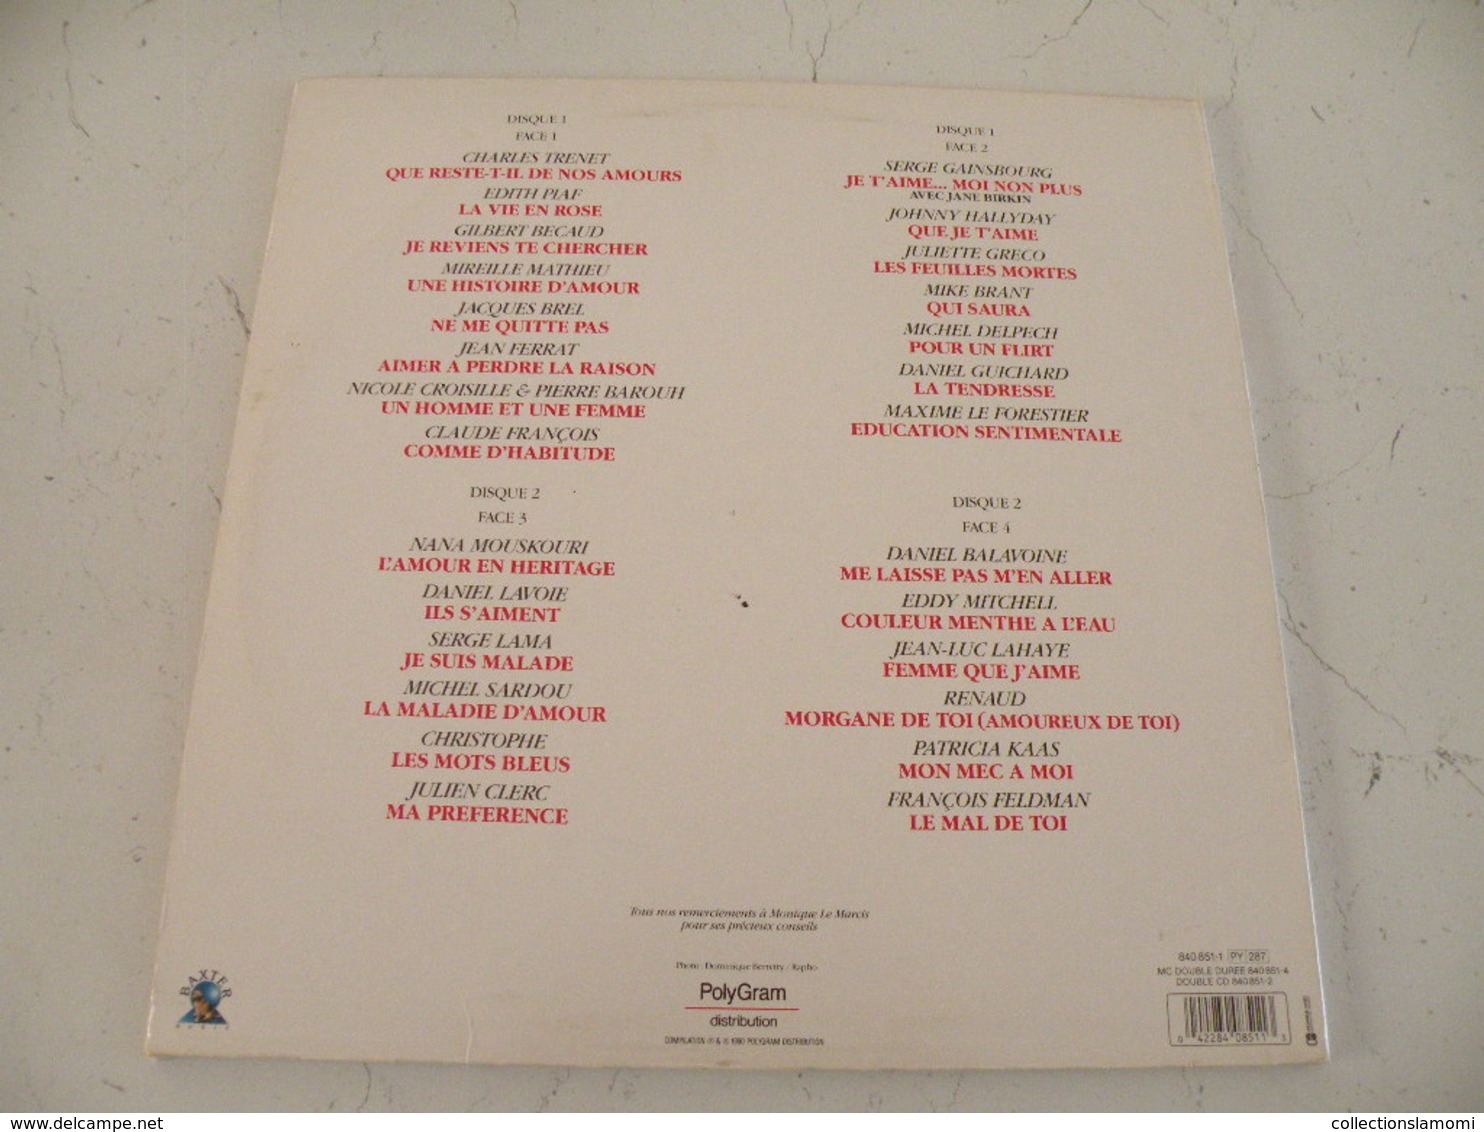 Les grandes chansons d'amour, versions originales, double album (Titres sur photos) - Vinyle 33 T